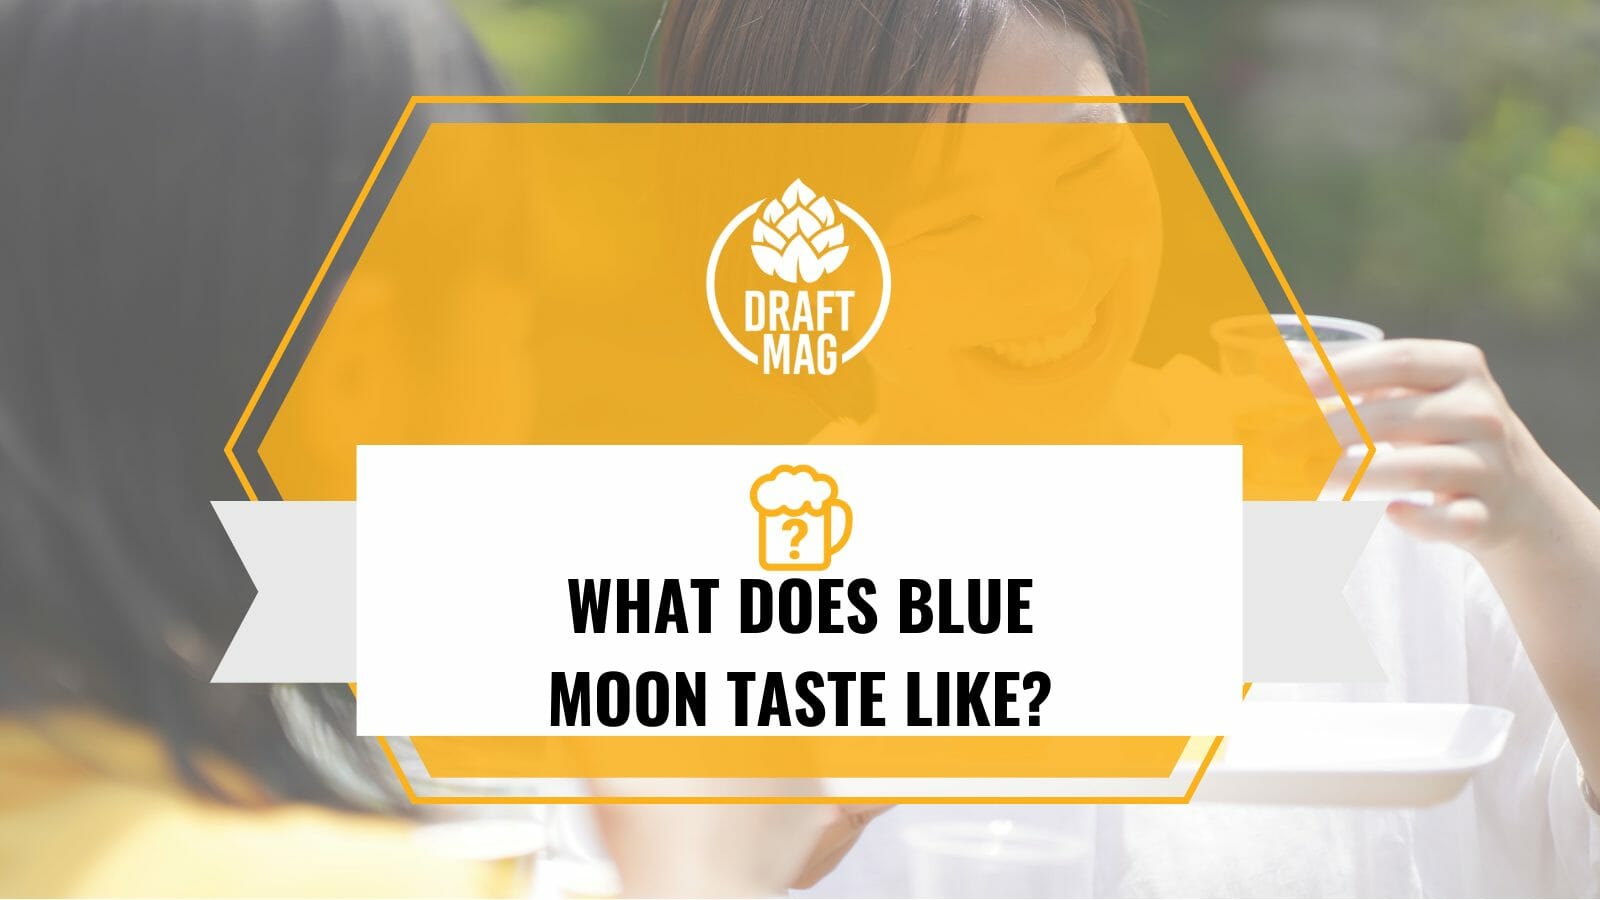 Taste of blue moon